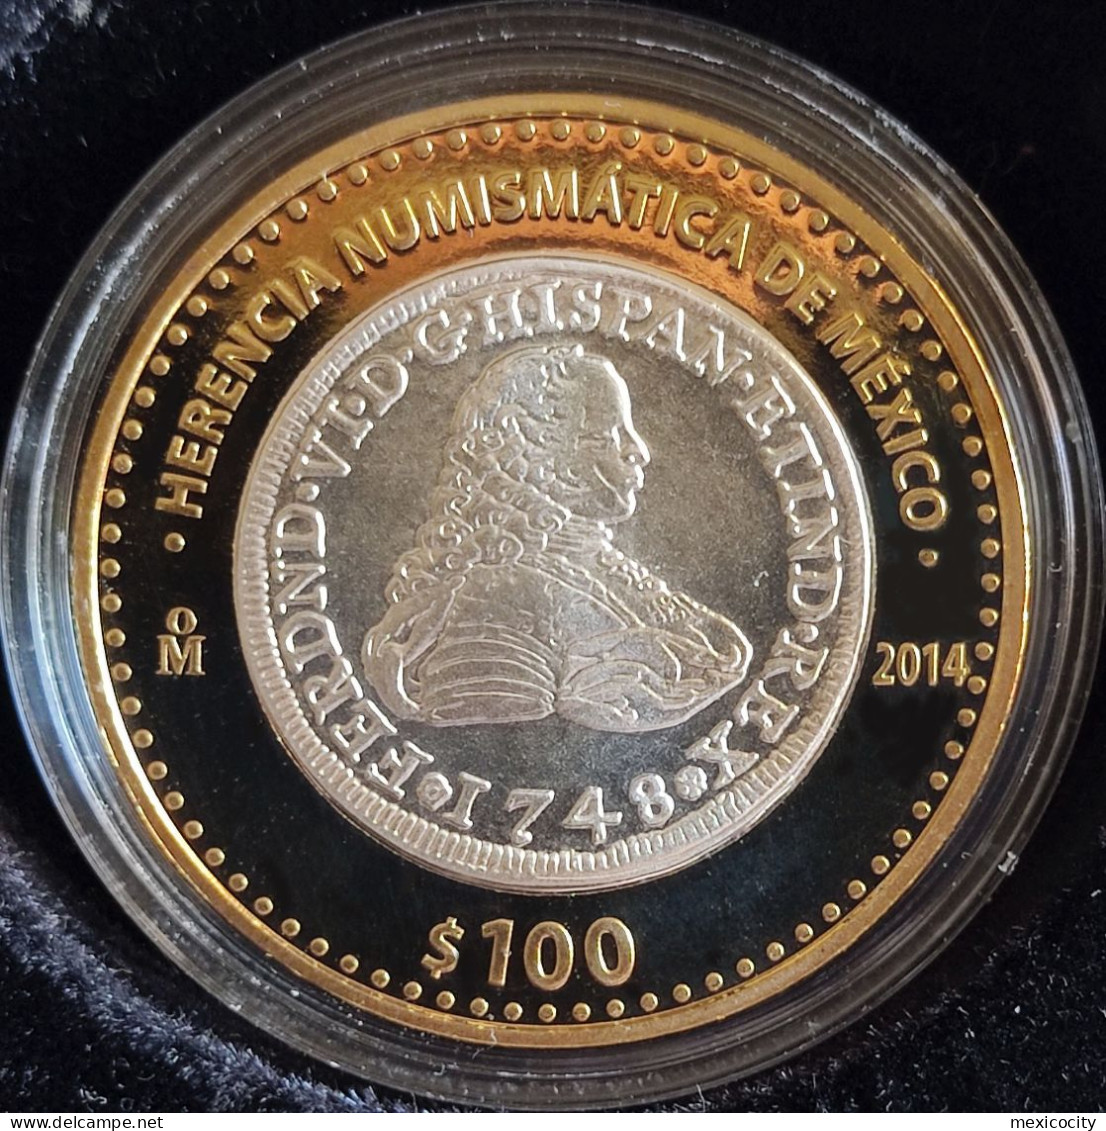 MEXICO 2014 $100 "8 Escudos Fernando VI Coin" Design SILVER Core Num. Heritage Series Proof Edition - México